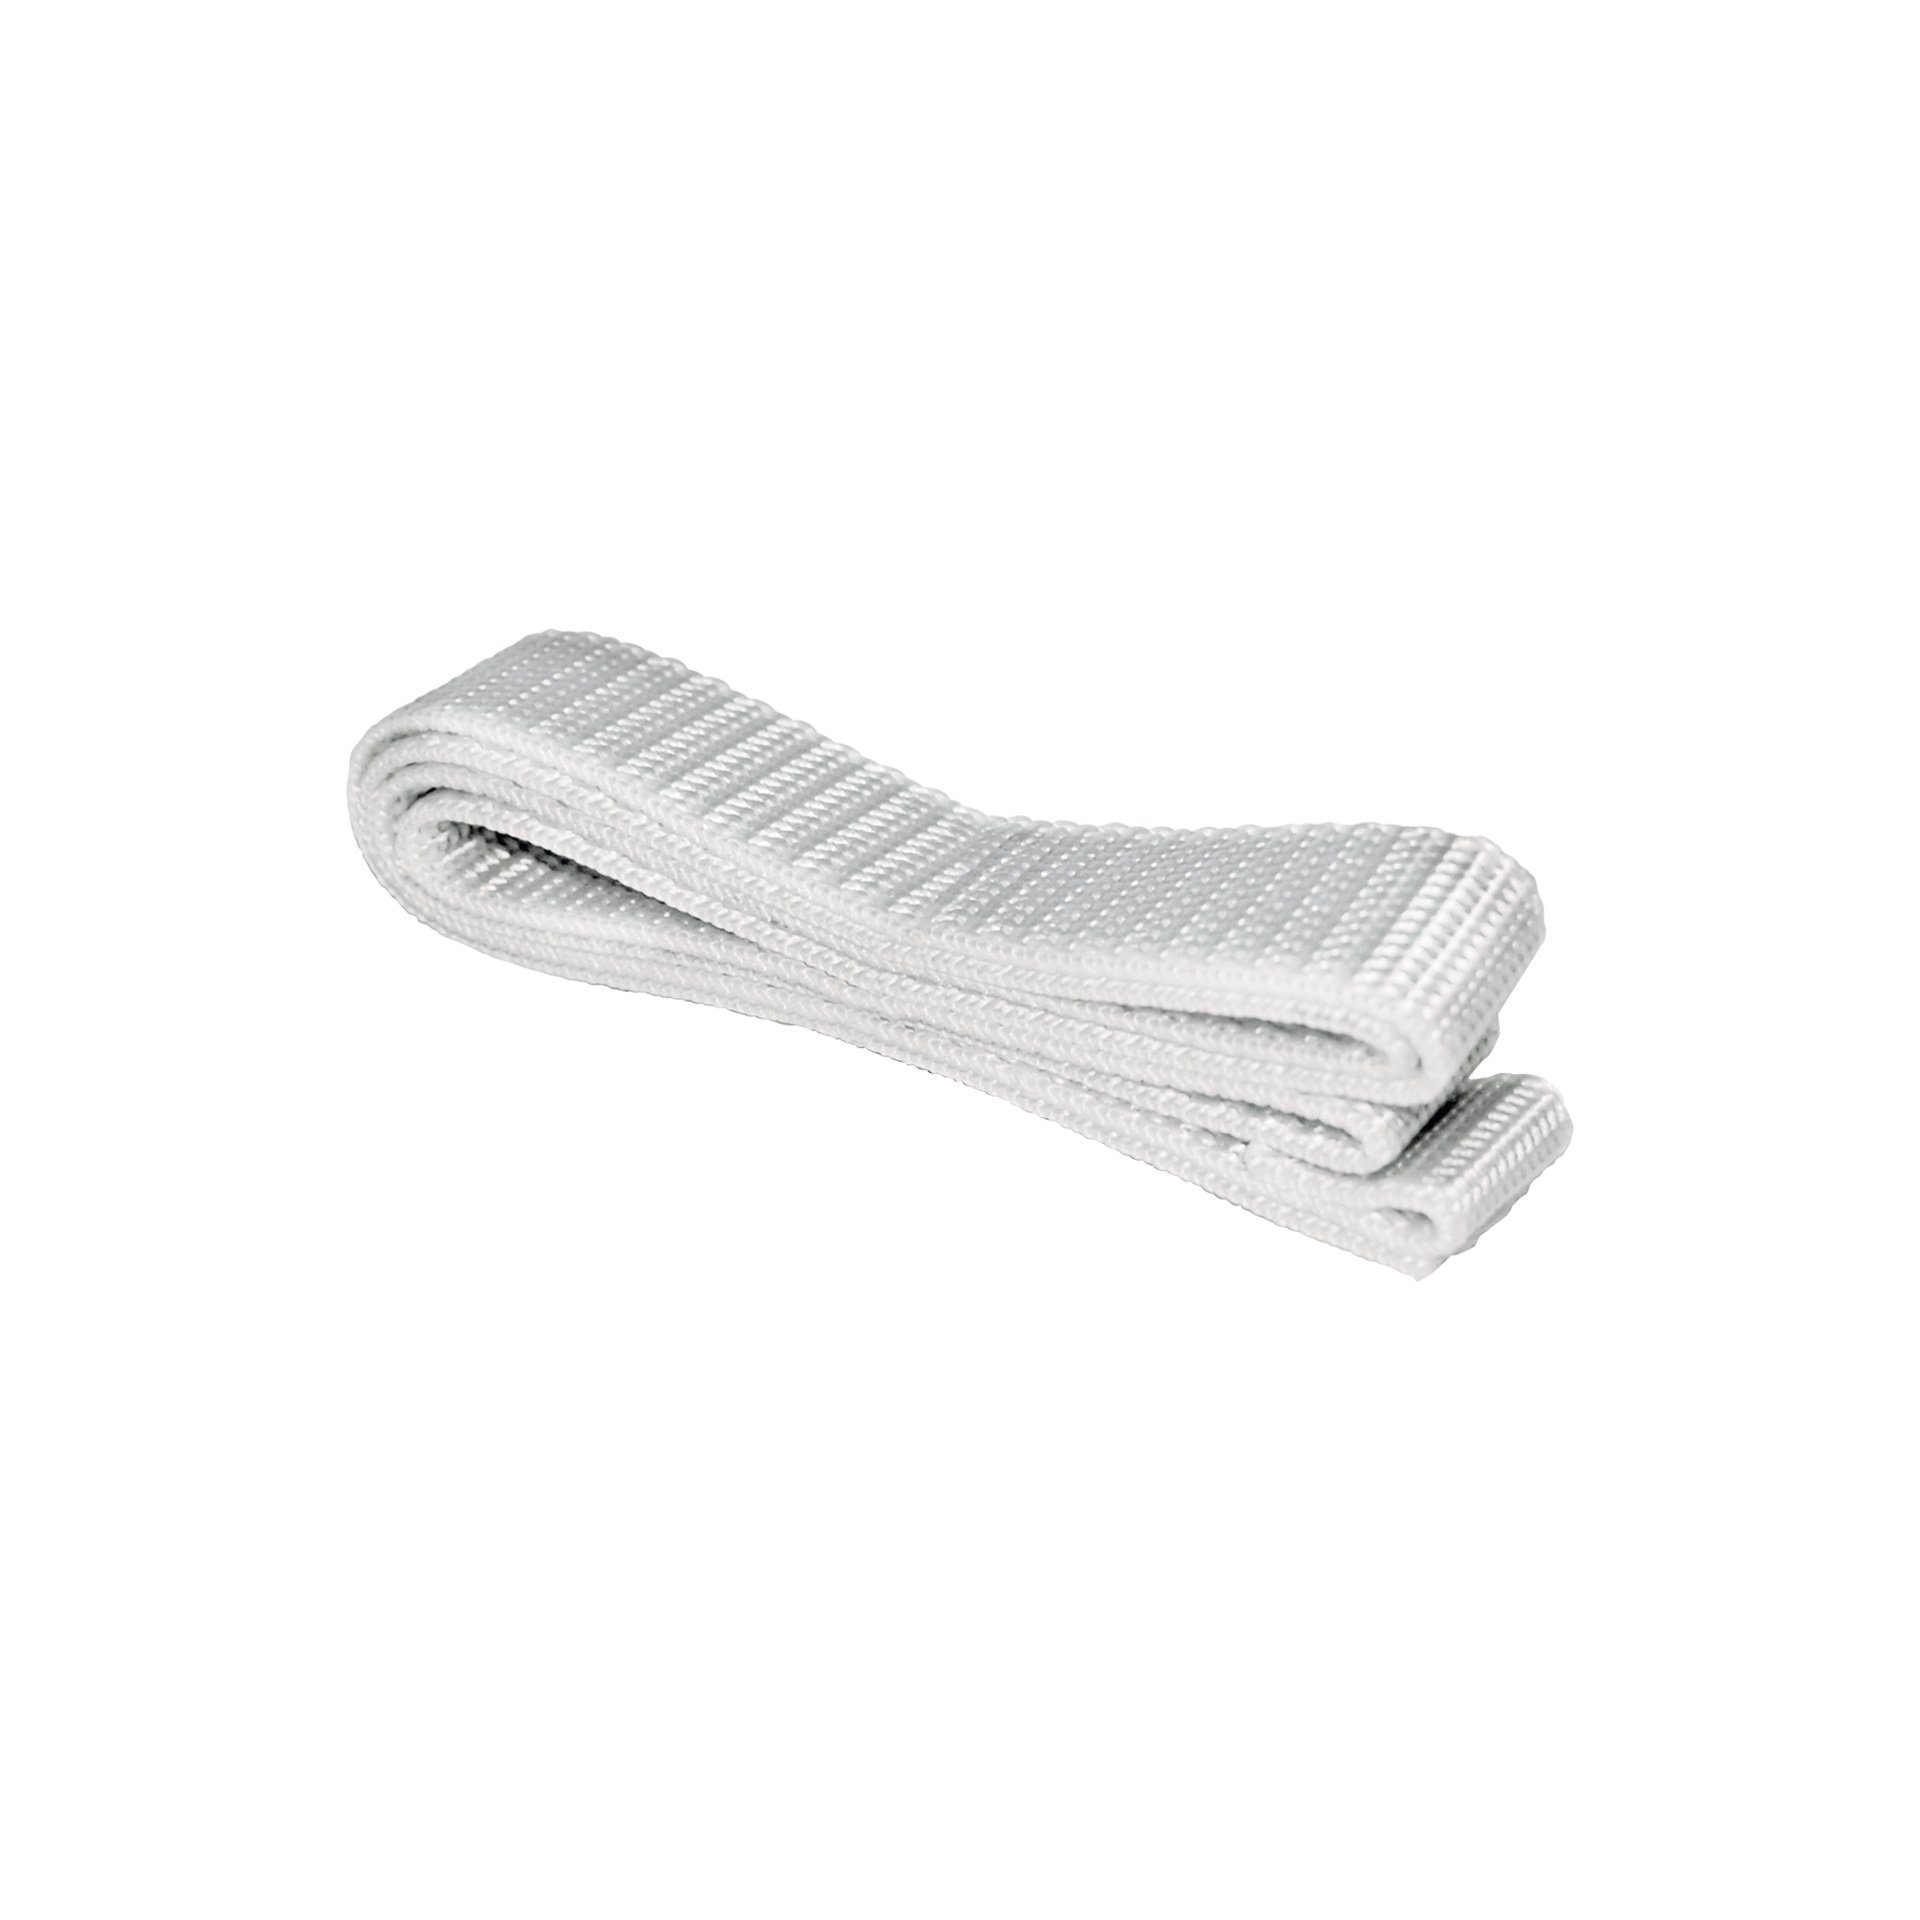 Lechuza® Balkonkasten Gurtband für Balconera 40,5 cm weiß-grau